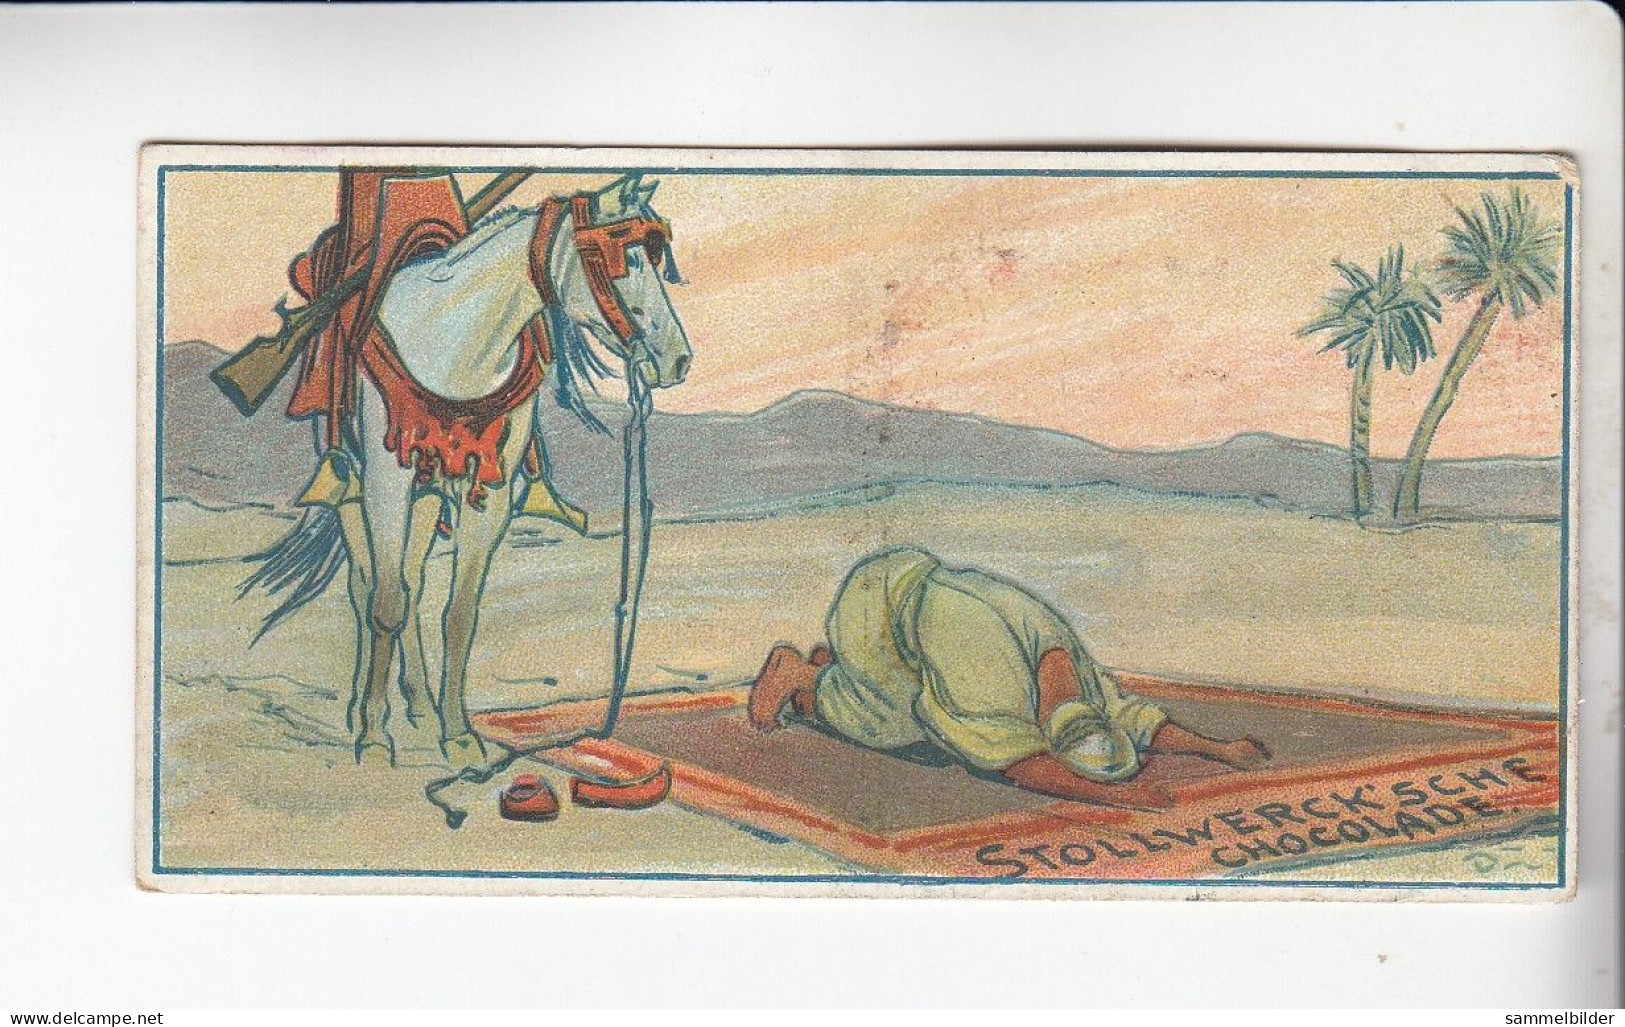 Stollwerck Album No 4 Mensch Und Pferd  Betender Beduine   Grp 169#3 Von 1900 - Stollwerck